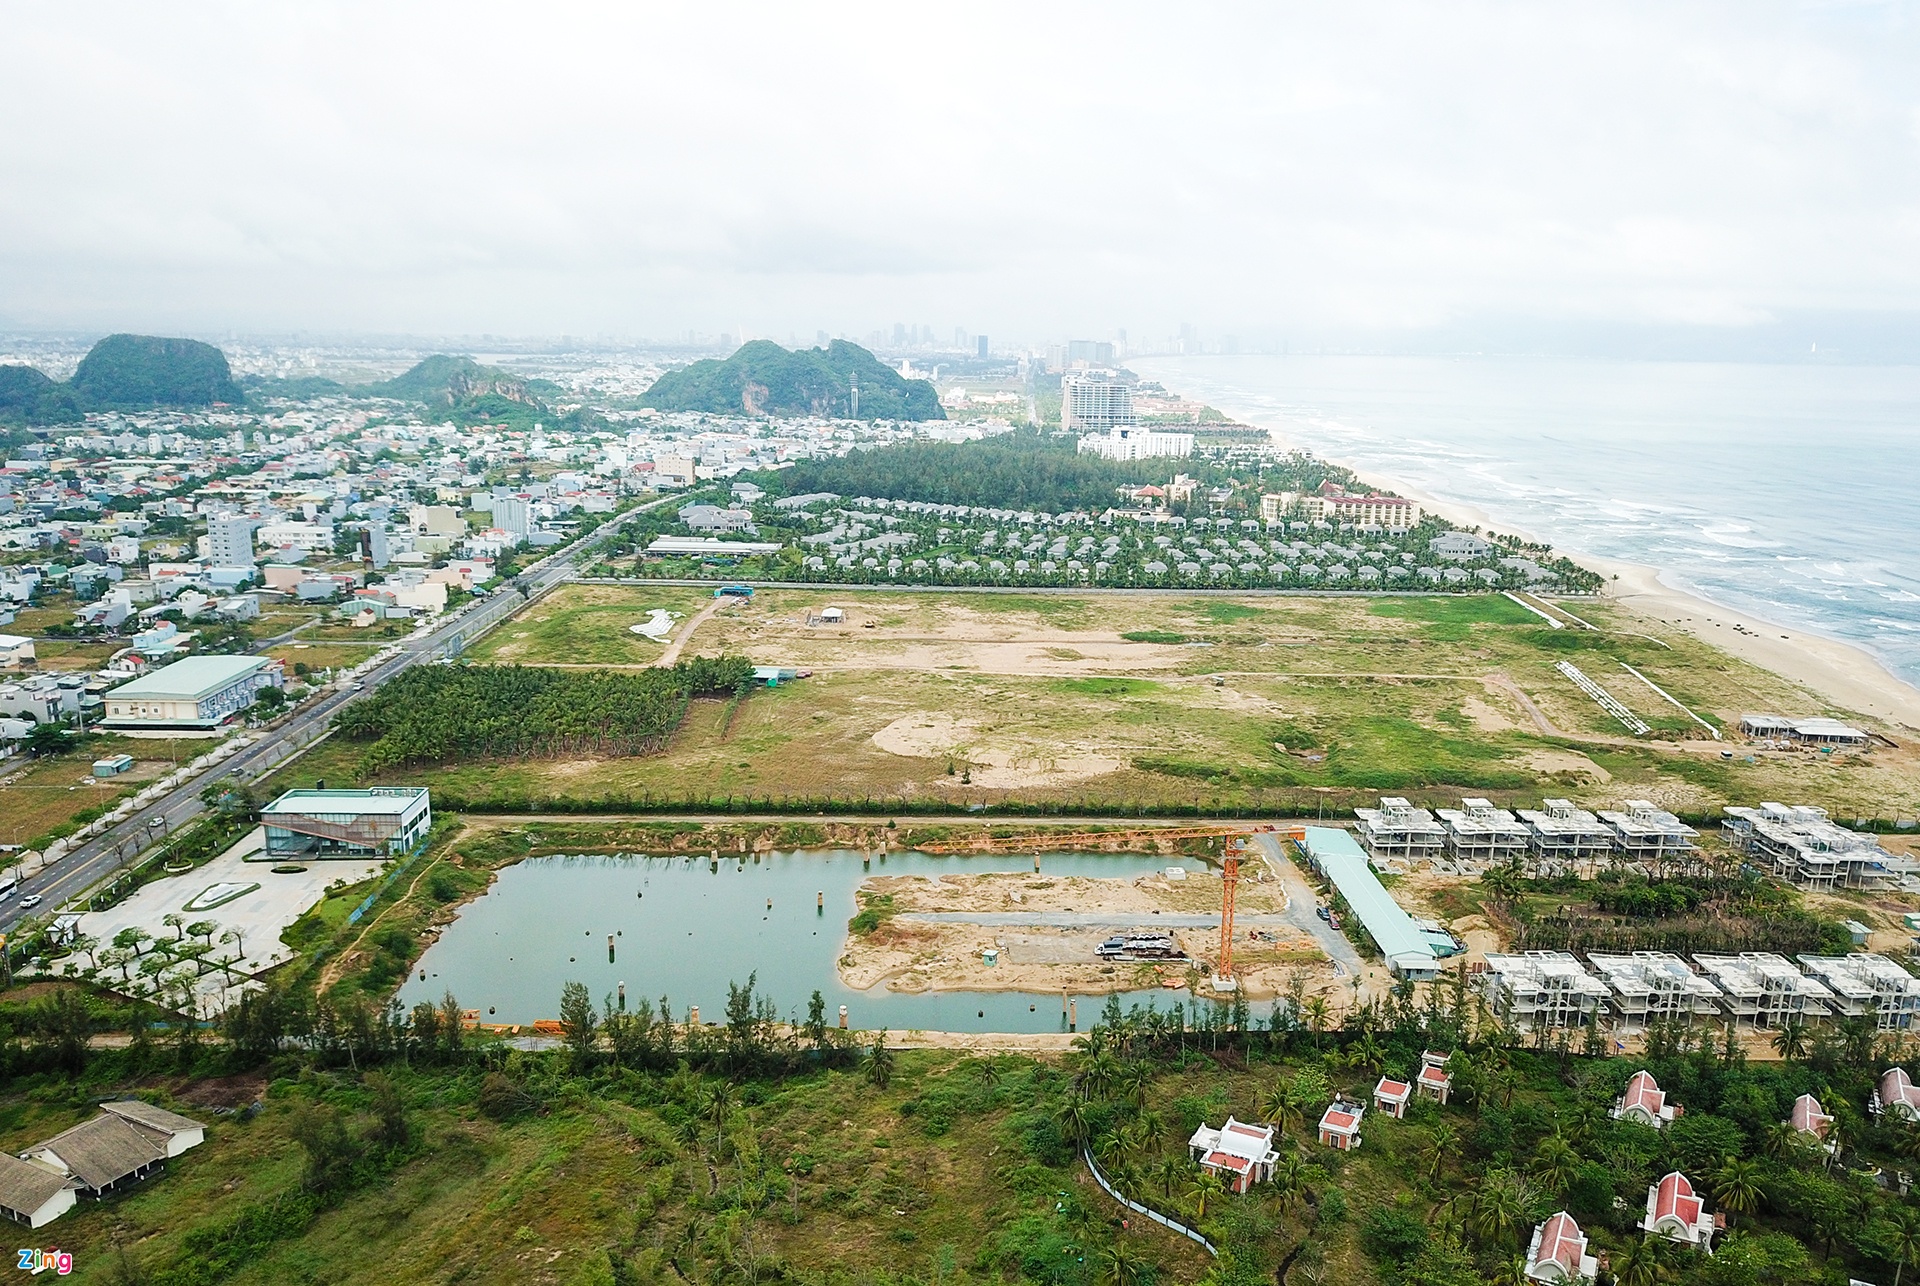 Hàng loạt biệt thự, resort bỏ hoang ở ven biển Đà Nẵng - Ảnh 11.